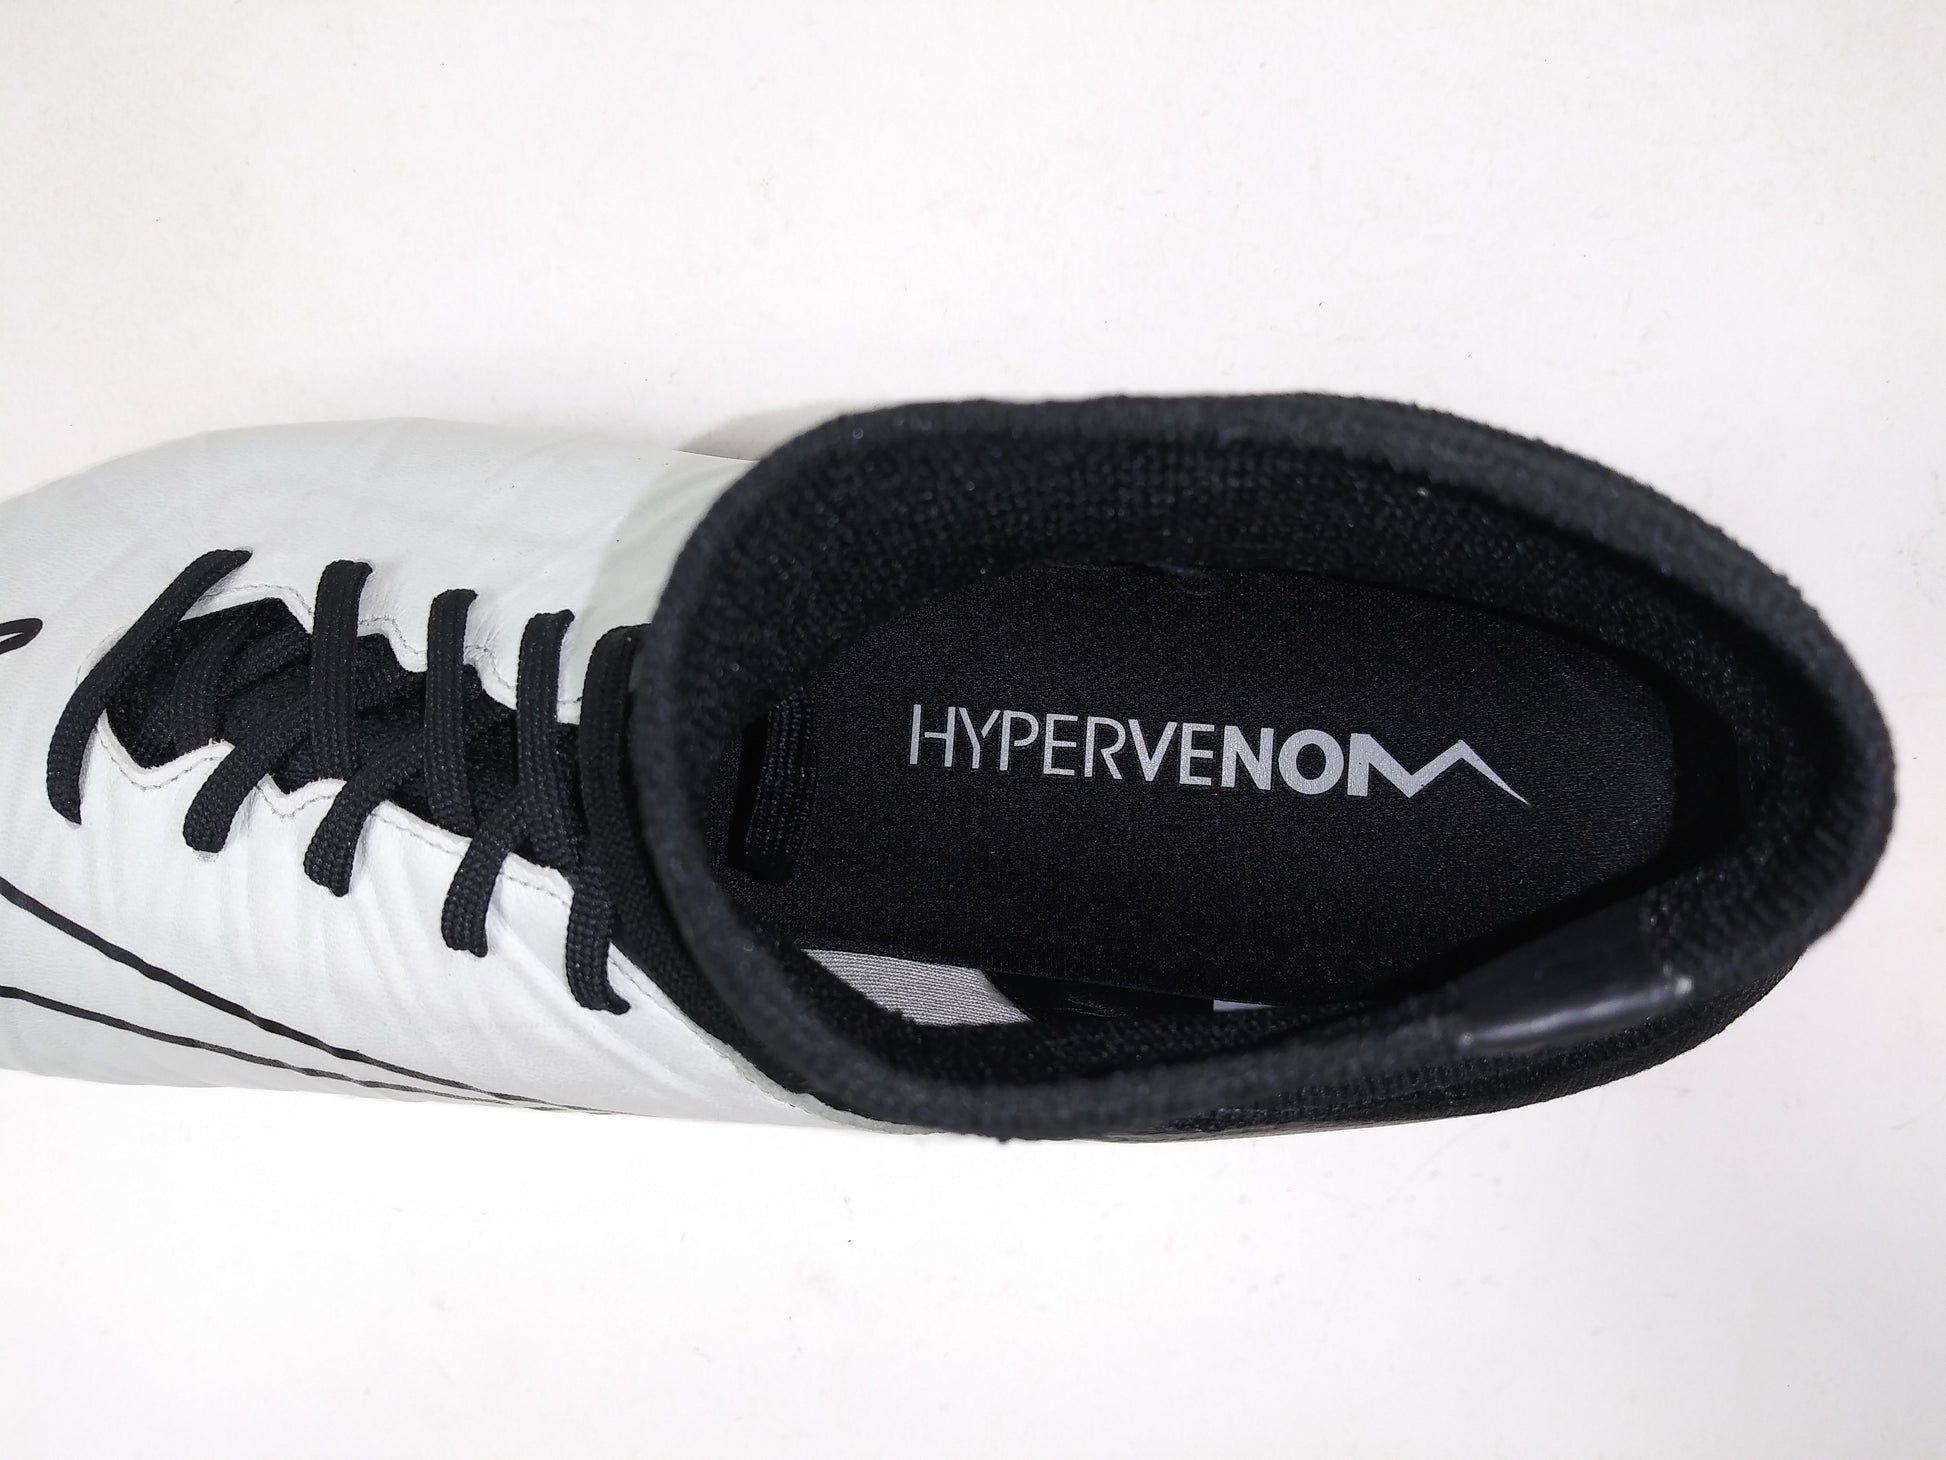 terugtrekken maak een foto Moeras Nike Hypervenom Phantom II FG LTHR White Black – Villegas Footwear